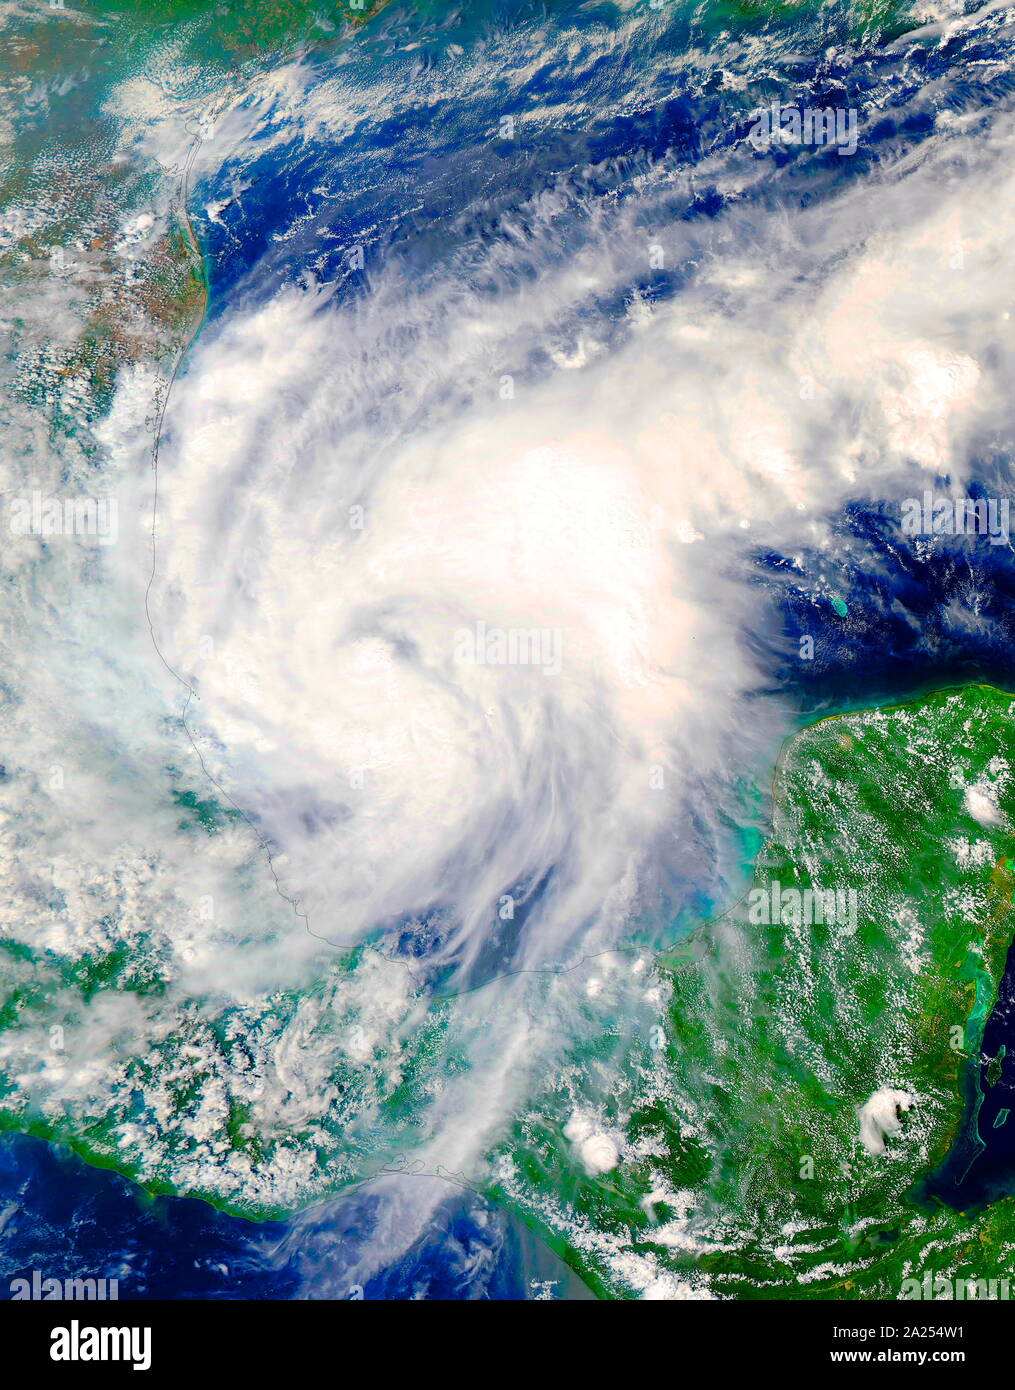 Della piattaforma satellitare Terra della NASA, catturata una luce visibile, immagine di uragano Katia, nella parte sud-occidentale del Golfo del Messico. Settembre 2017 Foto Stock